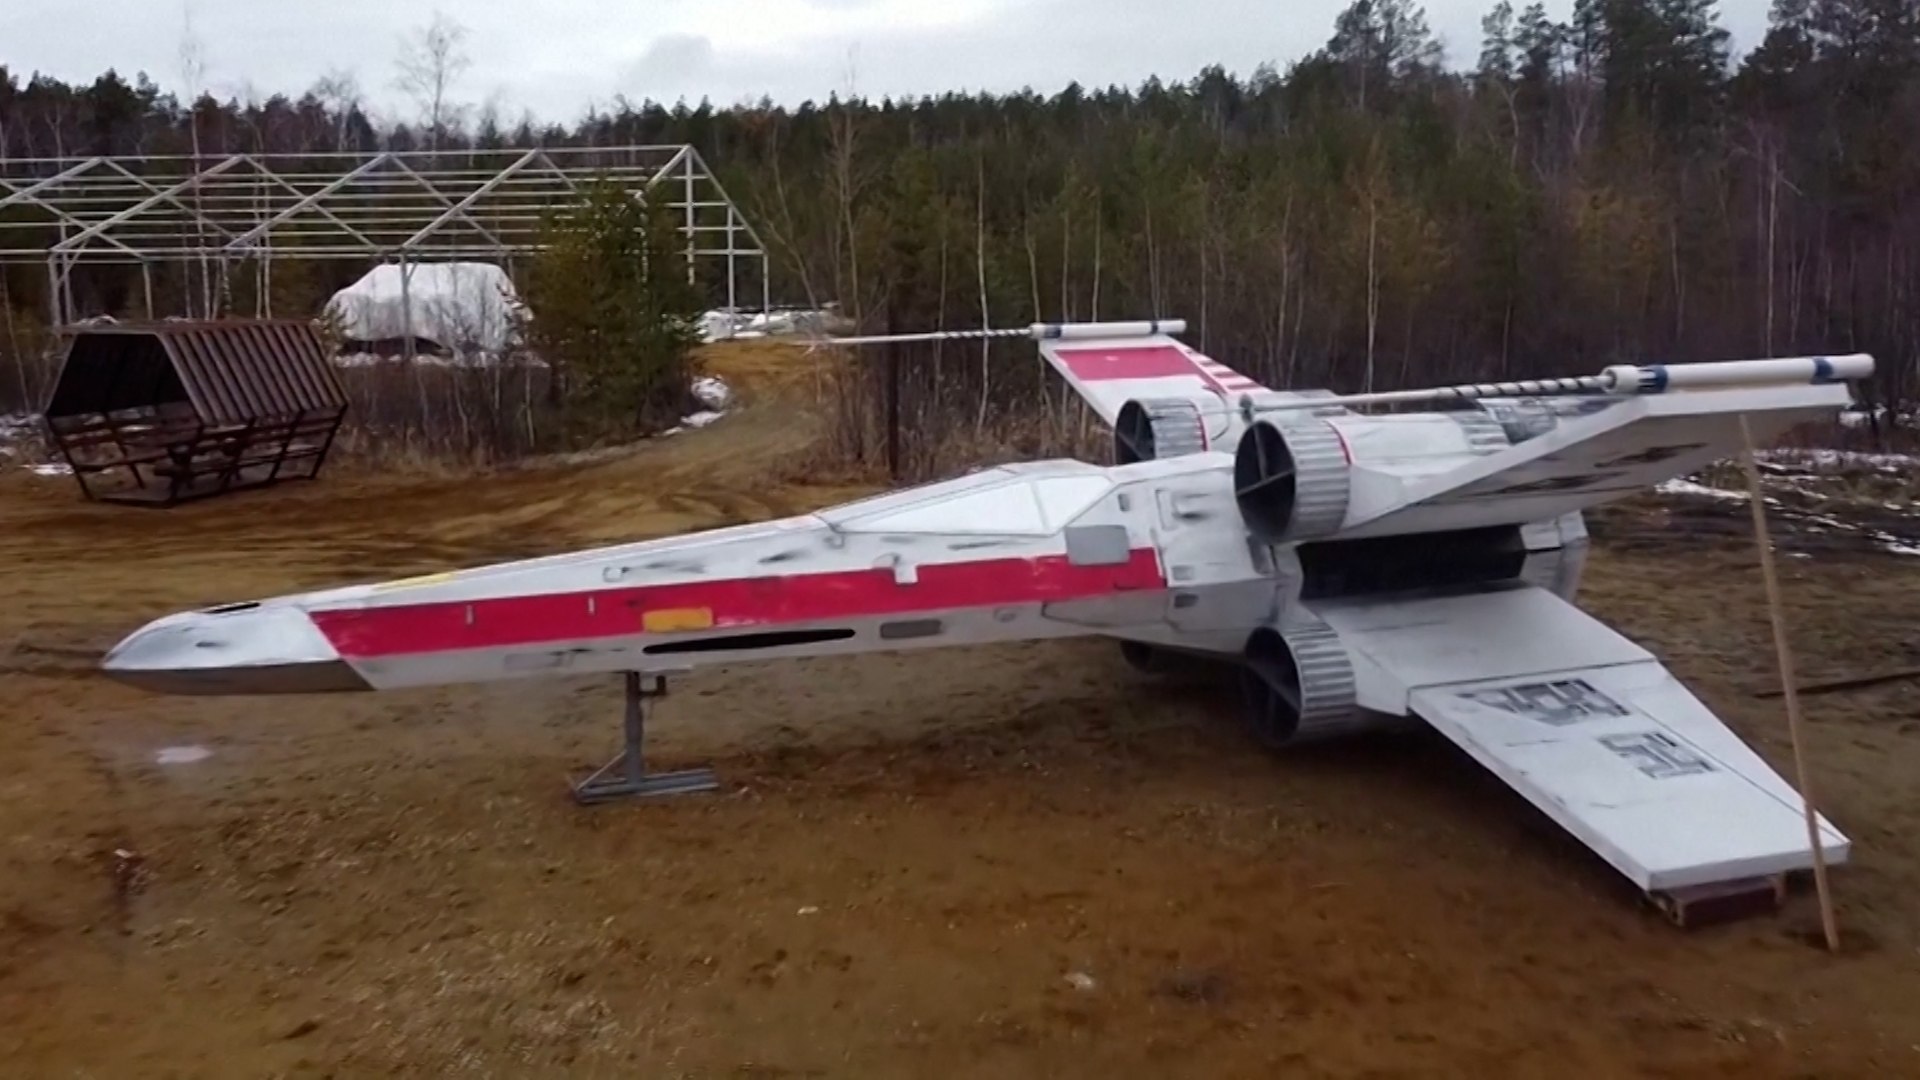 Sibérie : des passionnés ont construit une réplique ultra-réaliste du  célèbre vaisseau X-wing de Star Wars - Vidéo Dailymotion